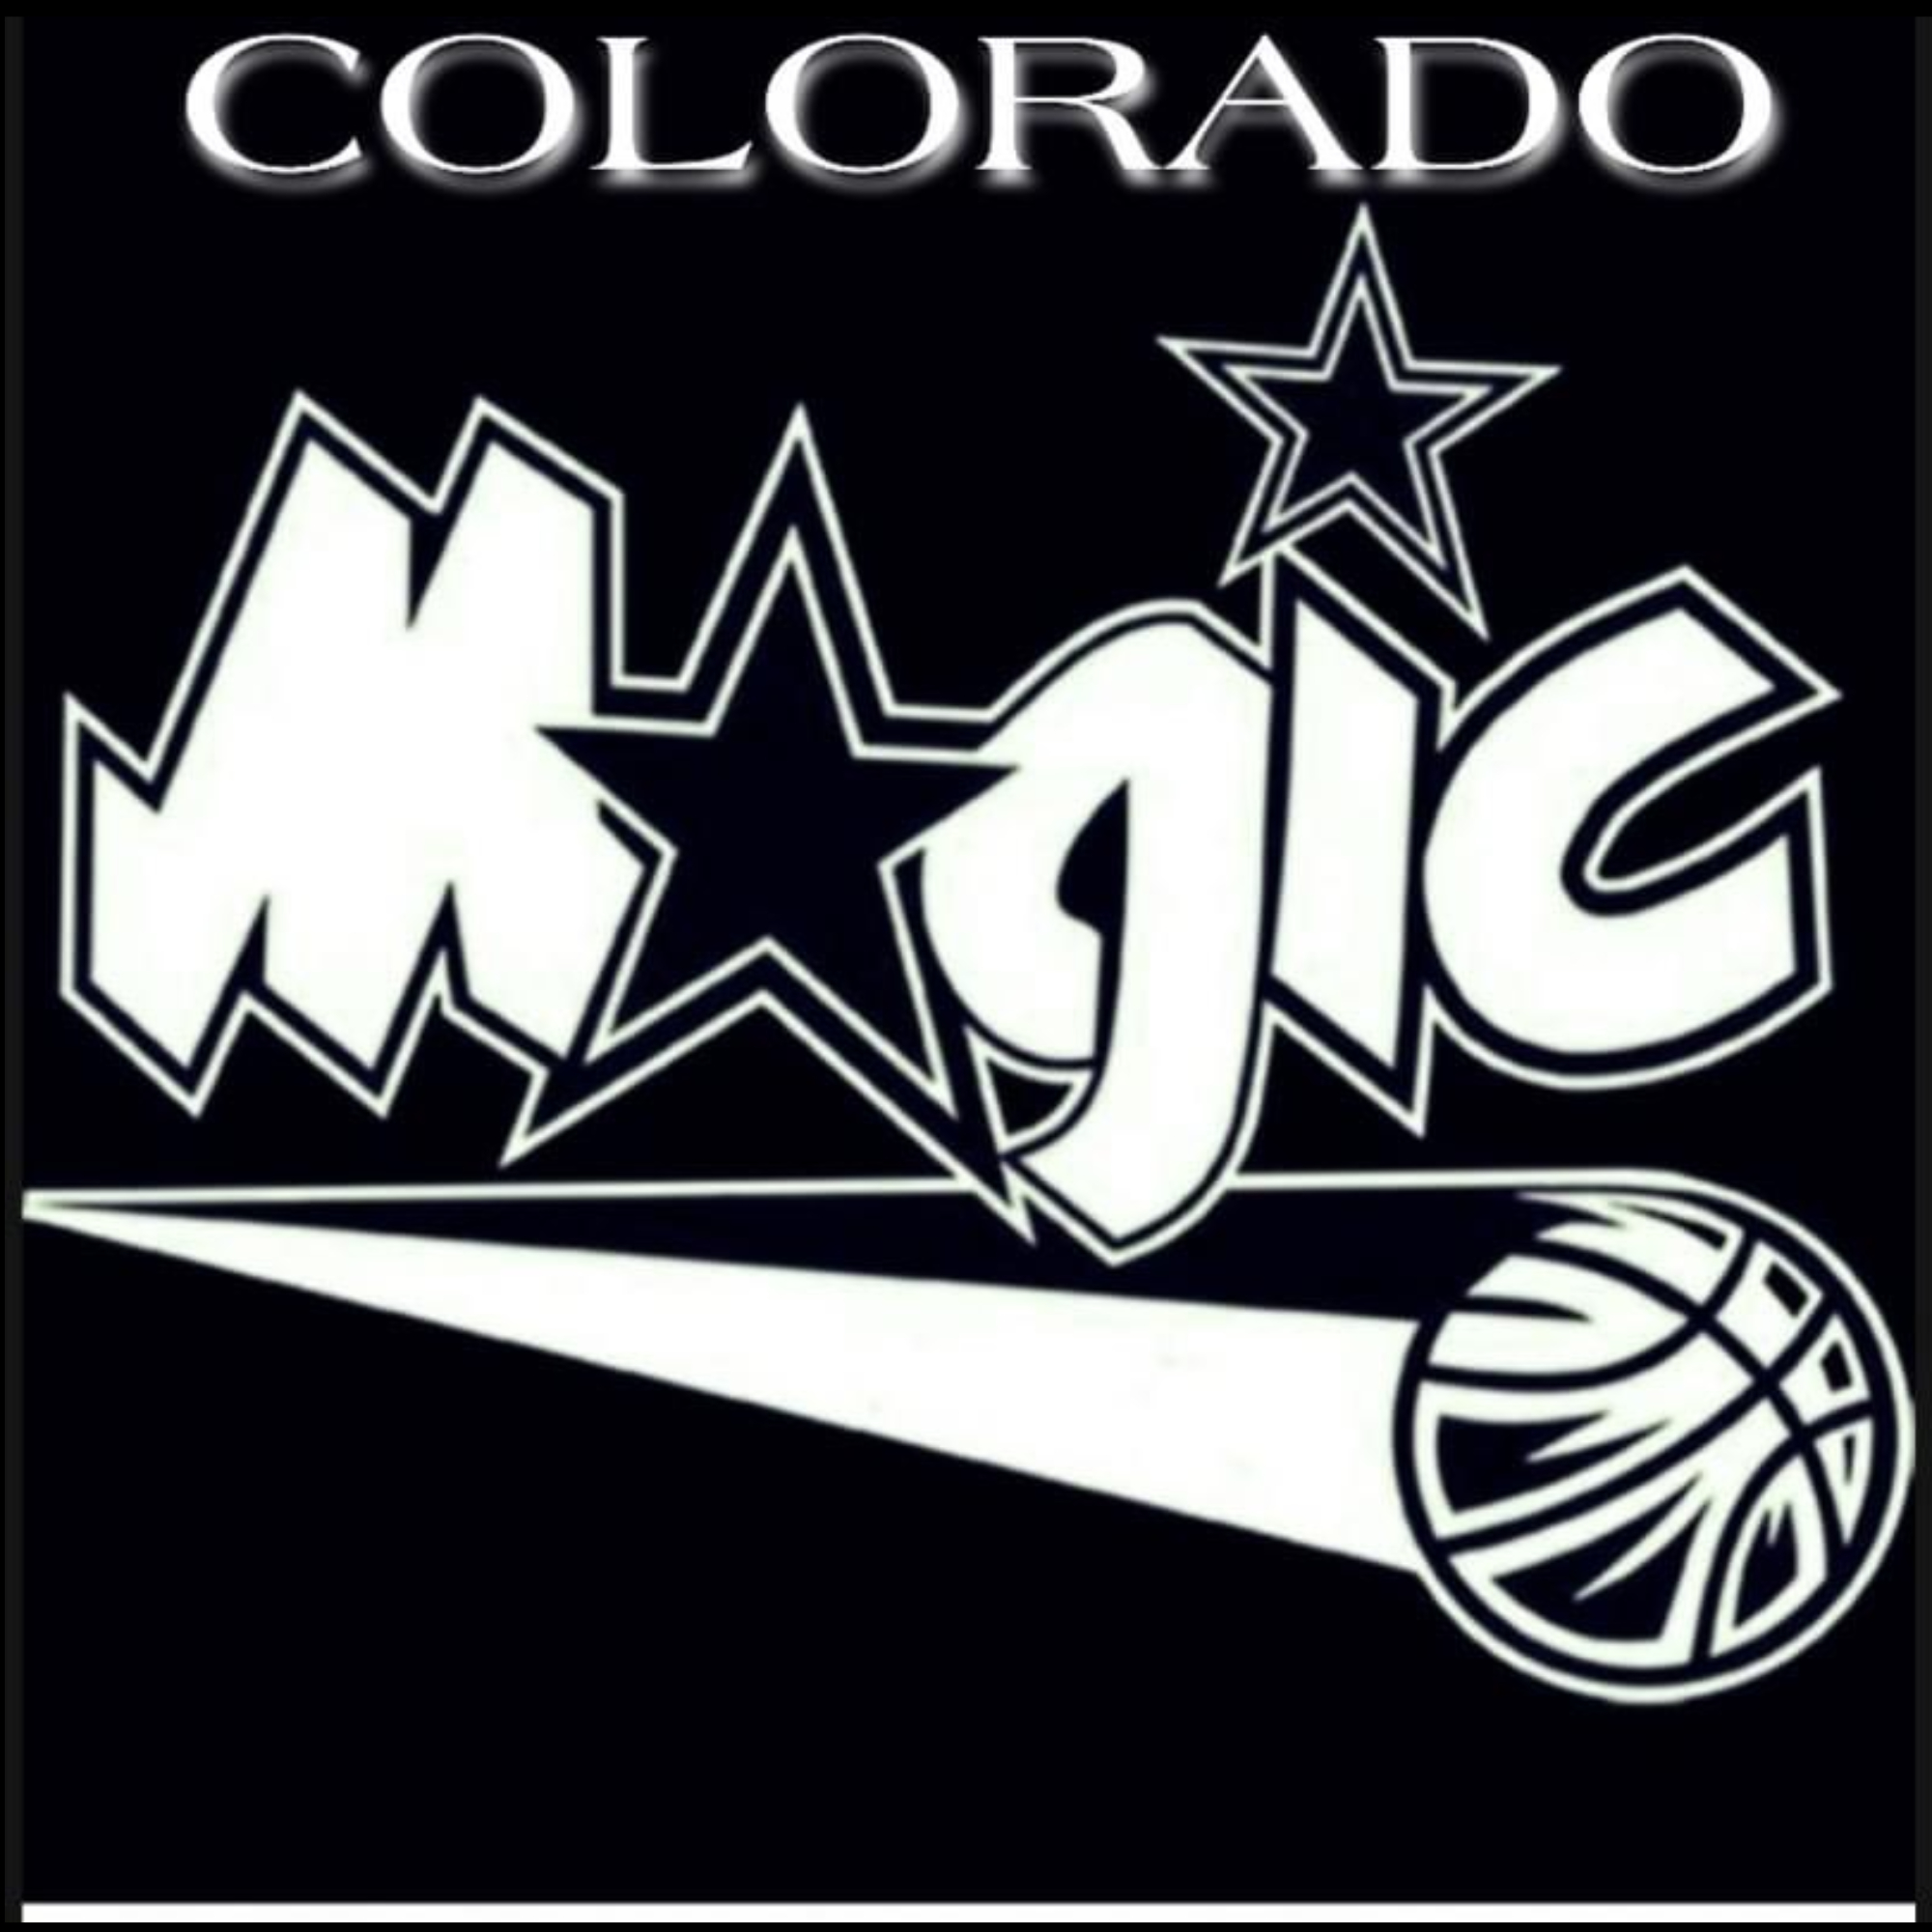 Organization logo for Colorado Magic